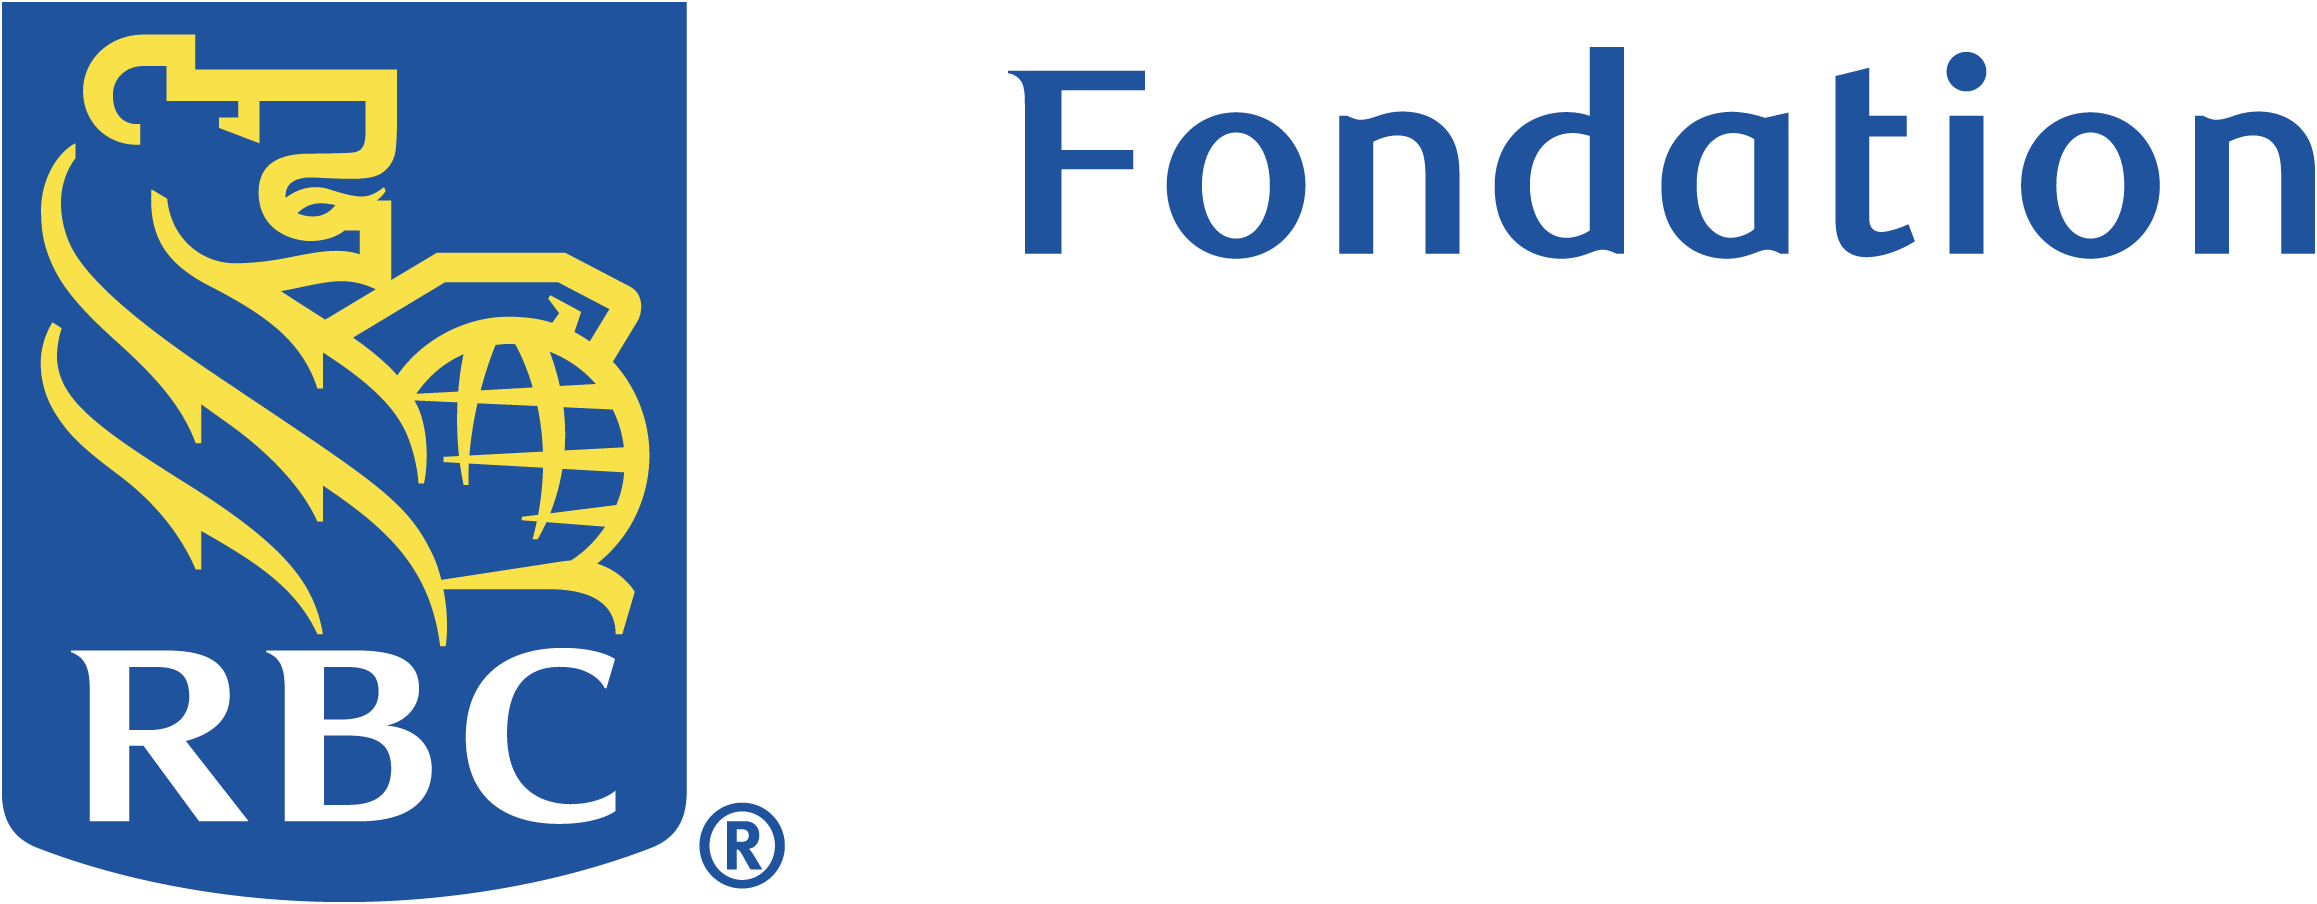 RBC Fondation logo